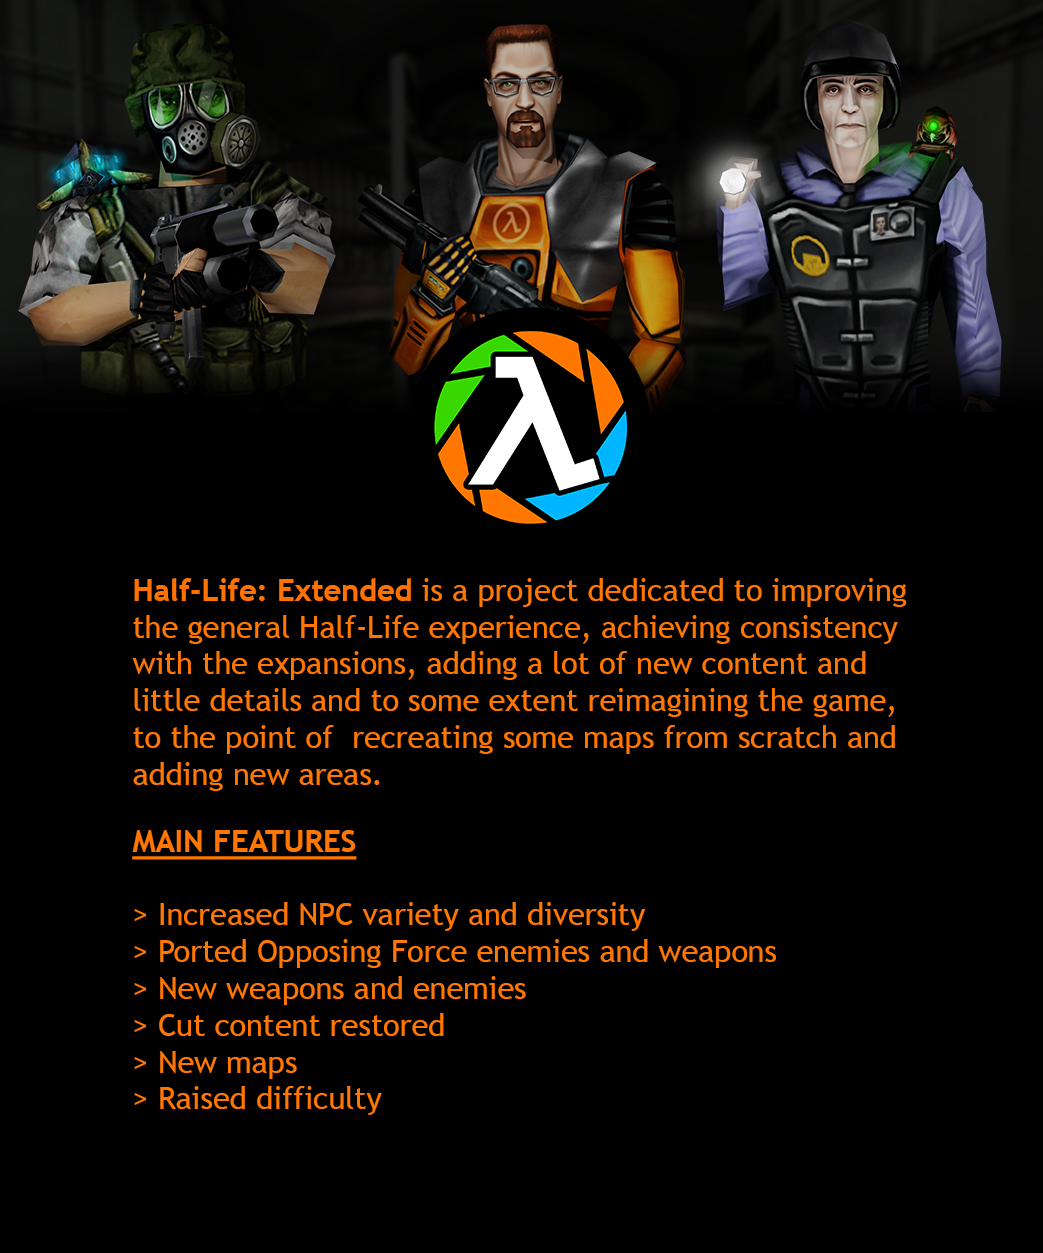 20180330033212 1 image - Hard - Life mod for Half-Life - Mod DB